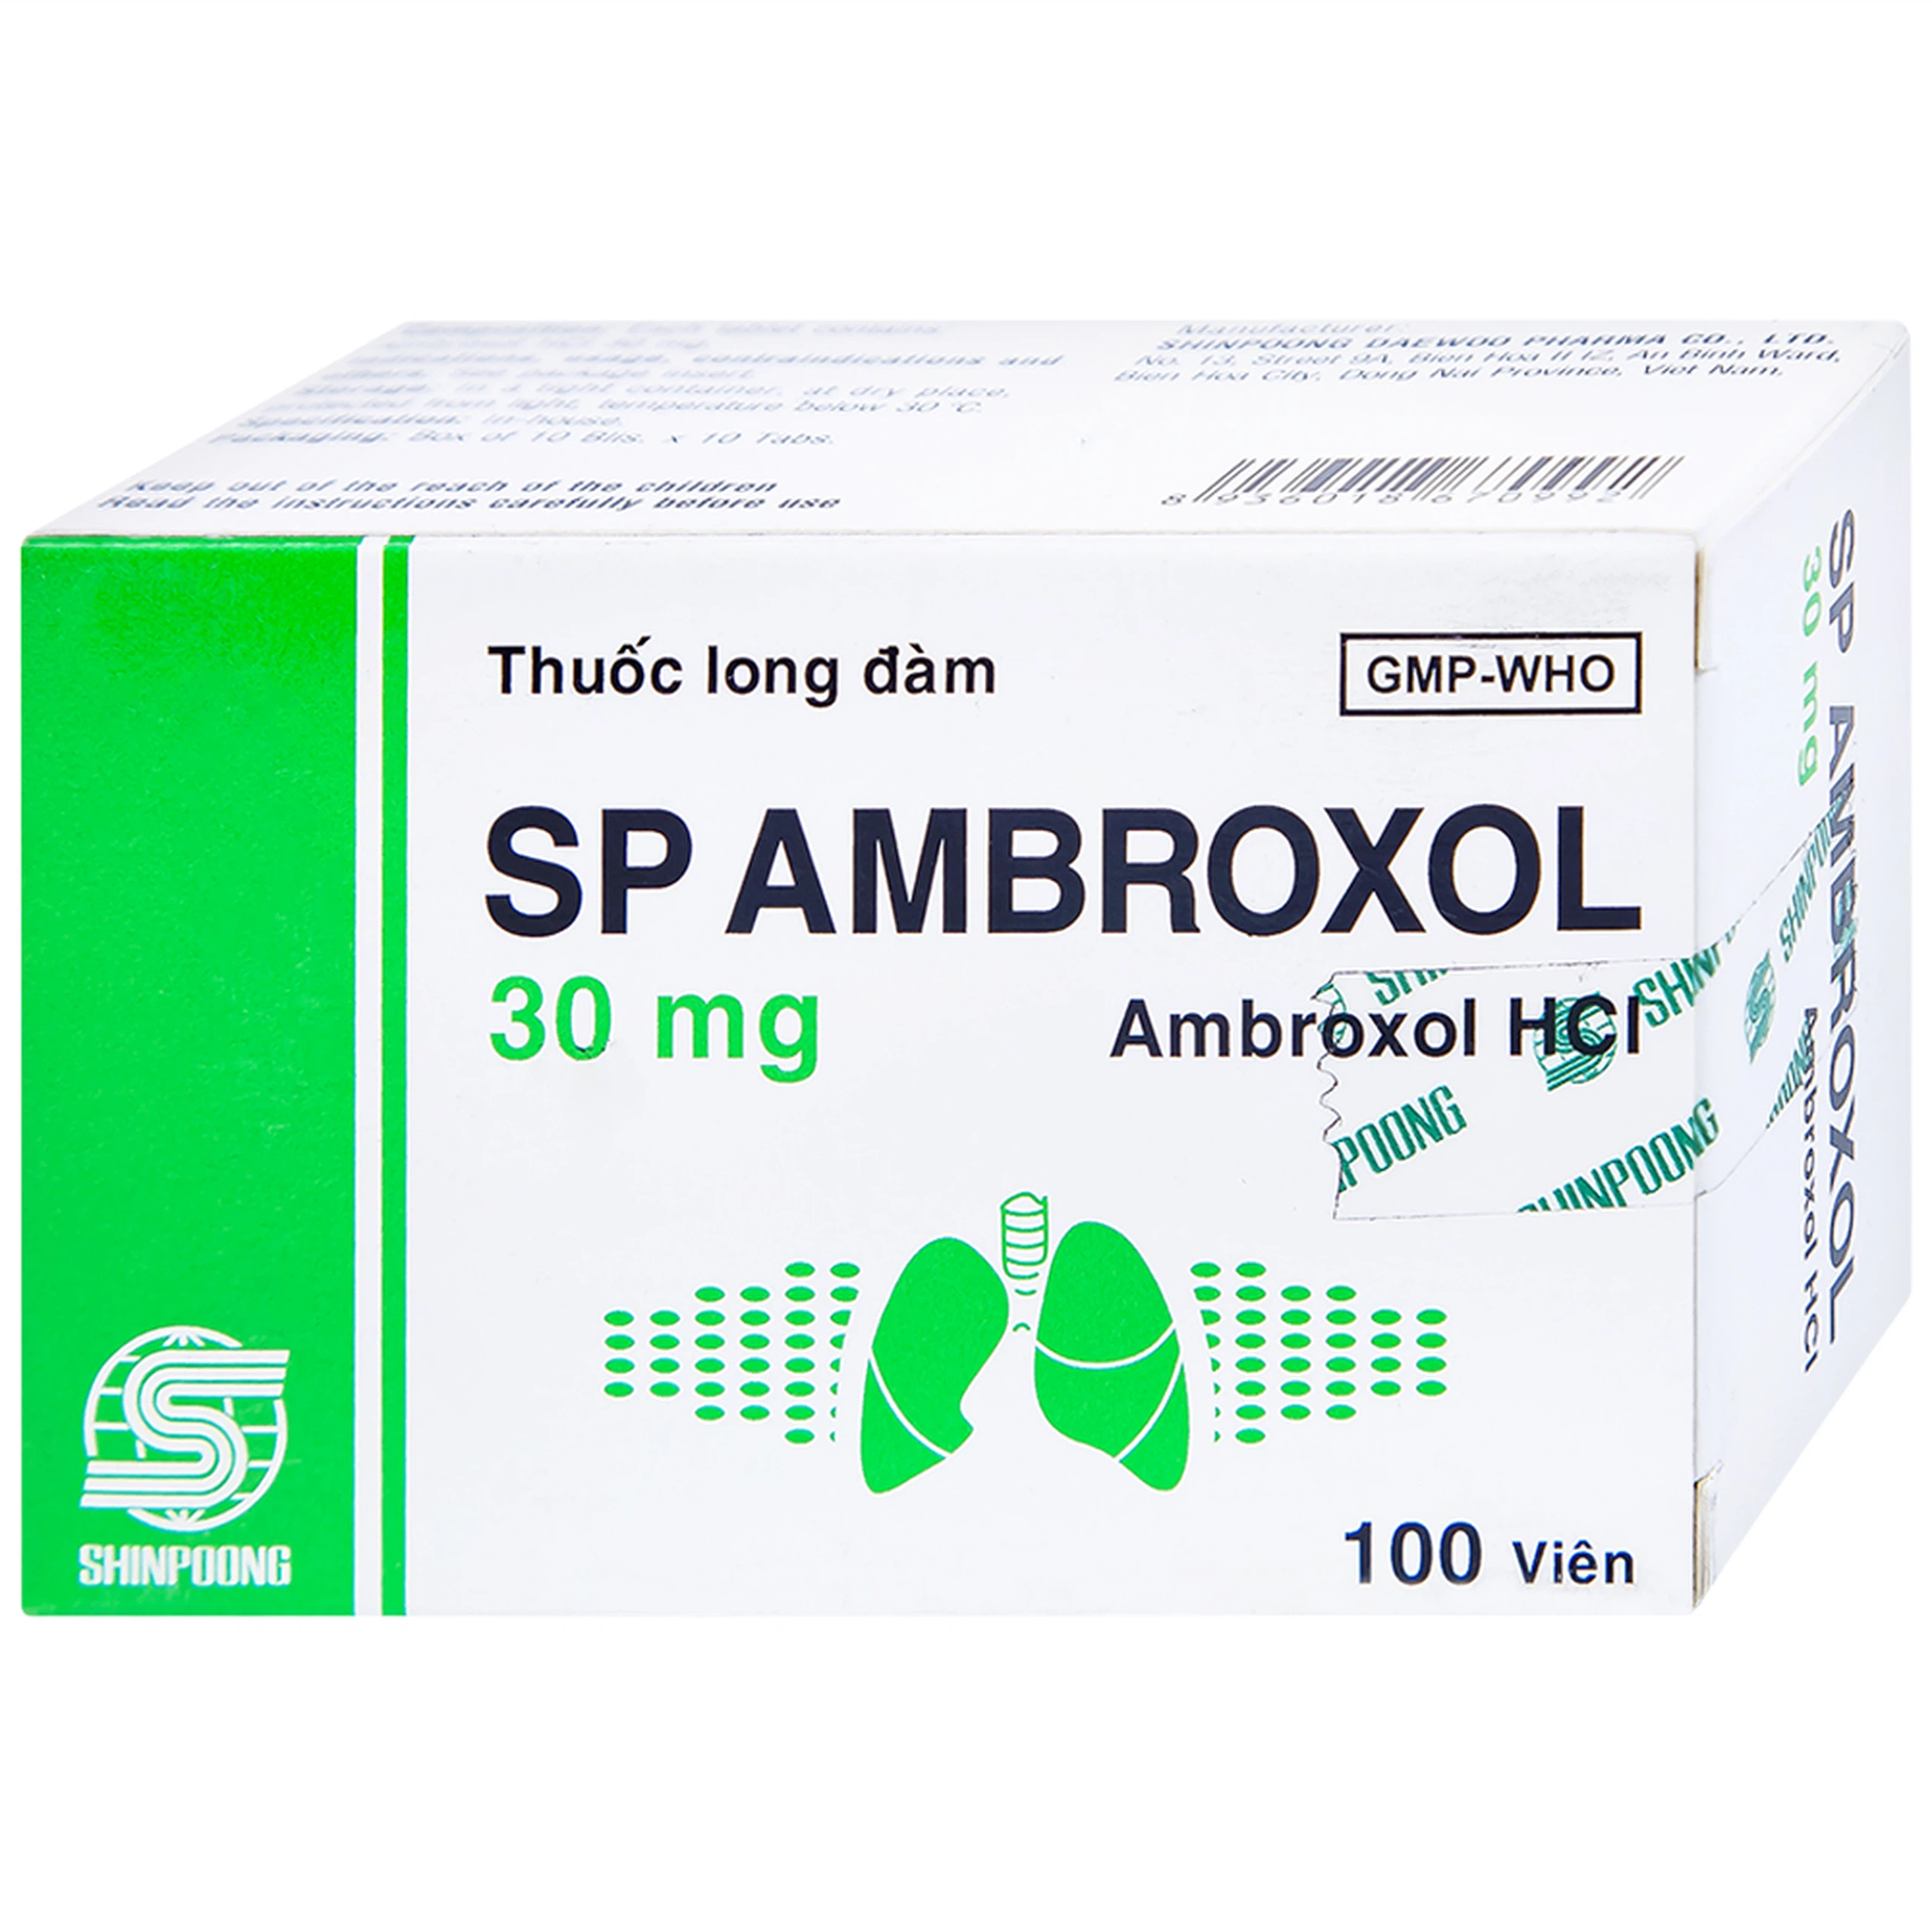 Thuốc SP Ambroxol 30mg điều trị các bệnh cấp và mạn tính ở đường hô hấp (10 vỉ x 10 viên)